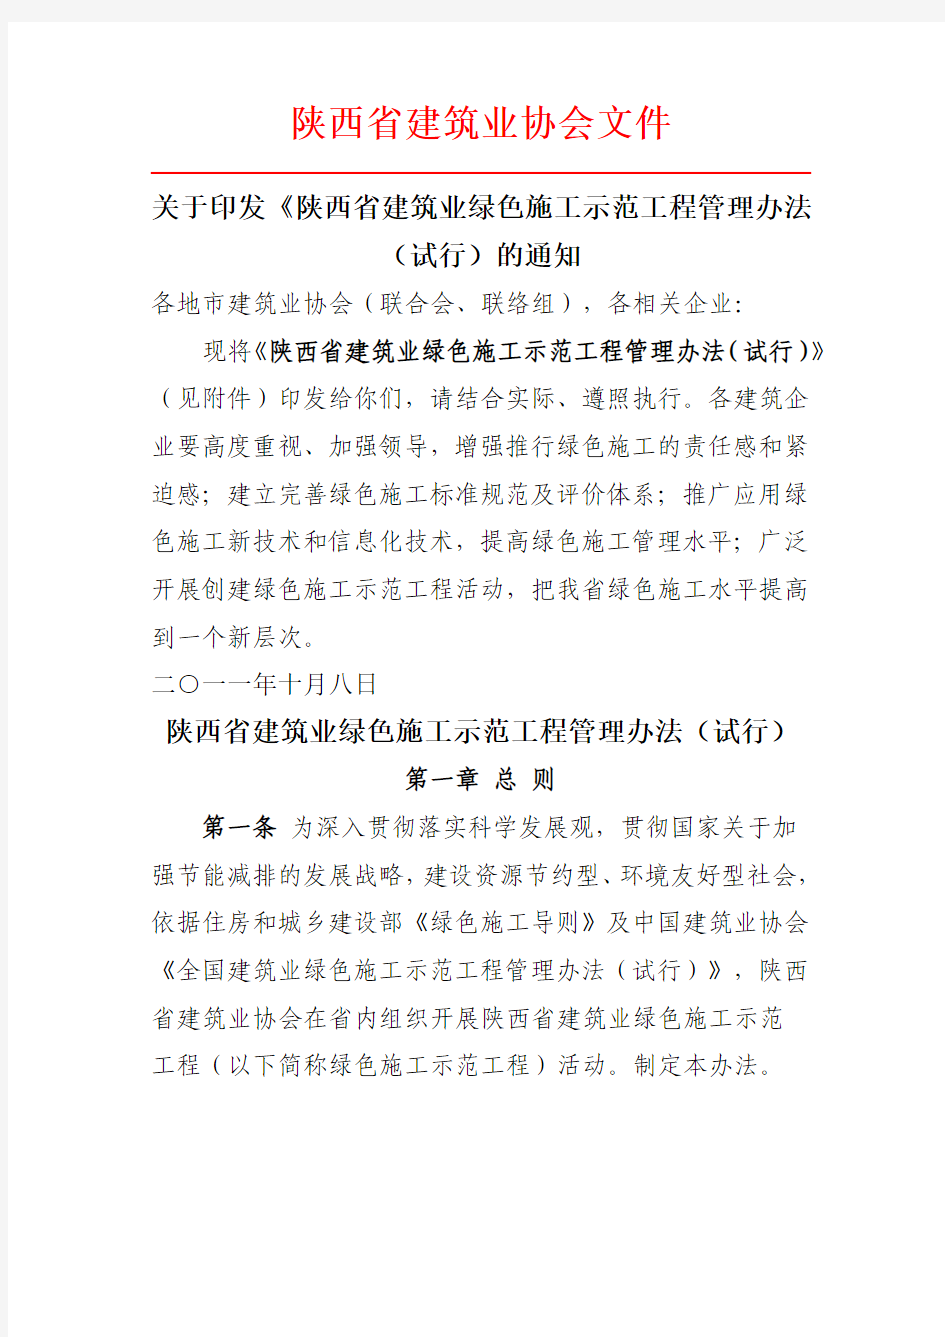 《陕西省建筑业绿色施工示范工程管理办法(试行)》的通知